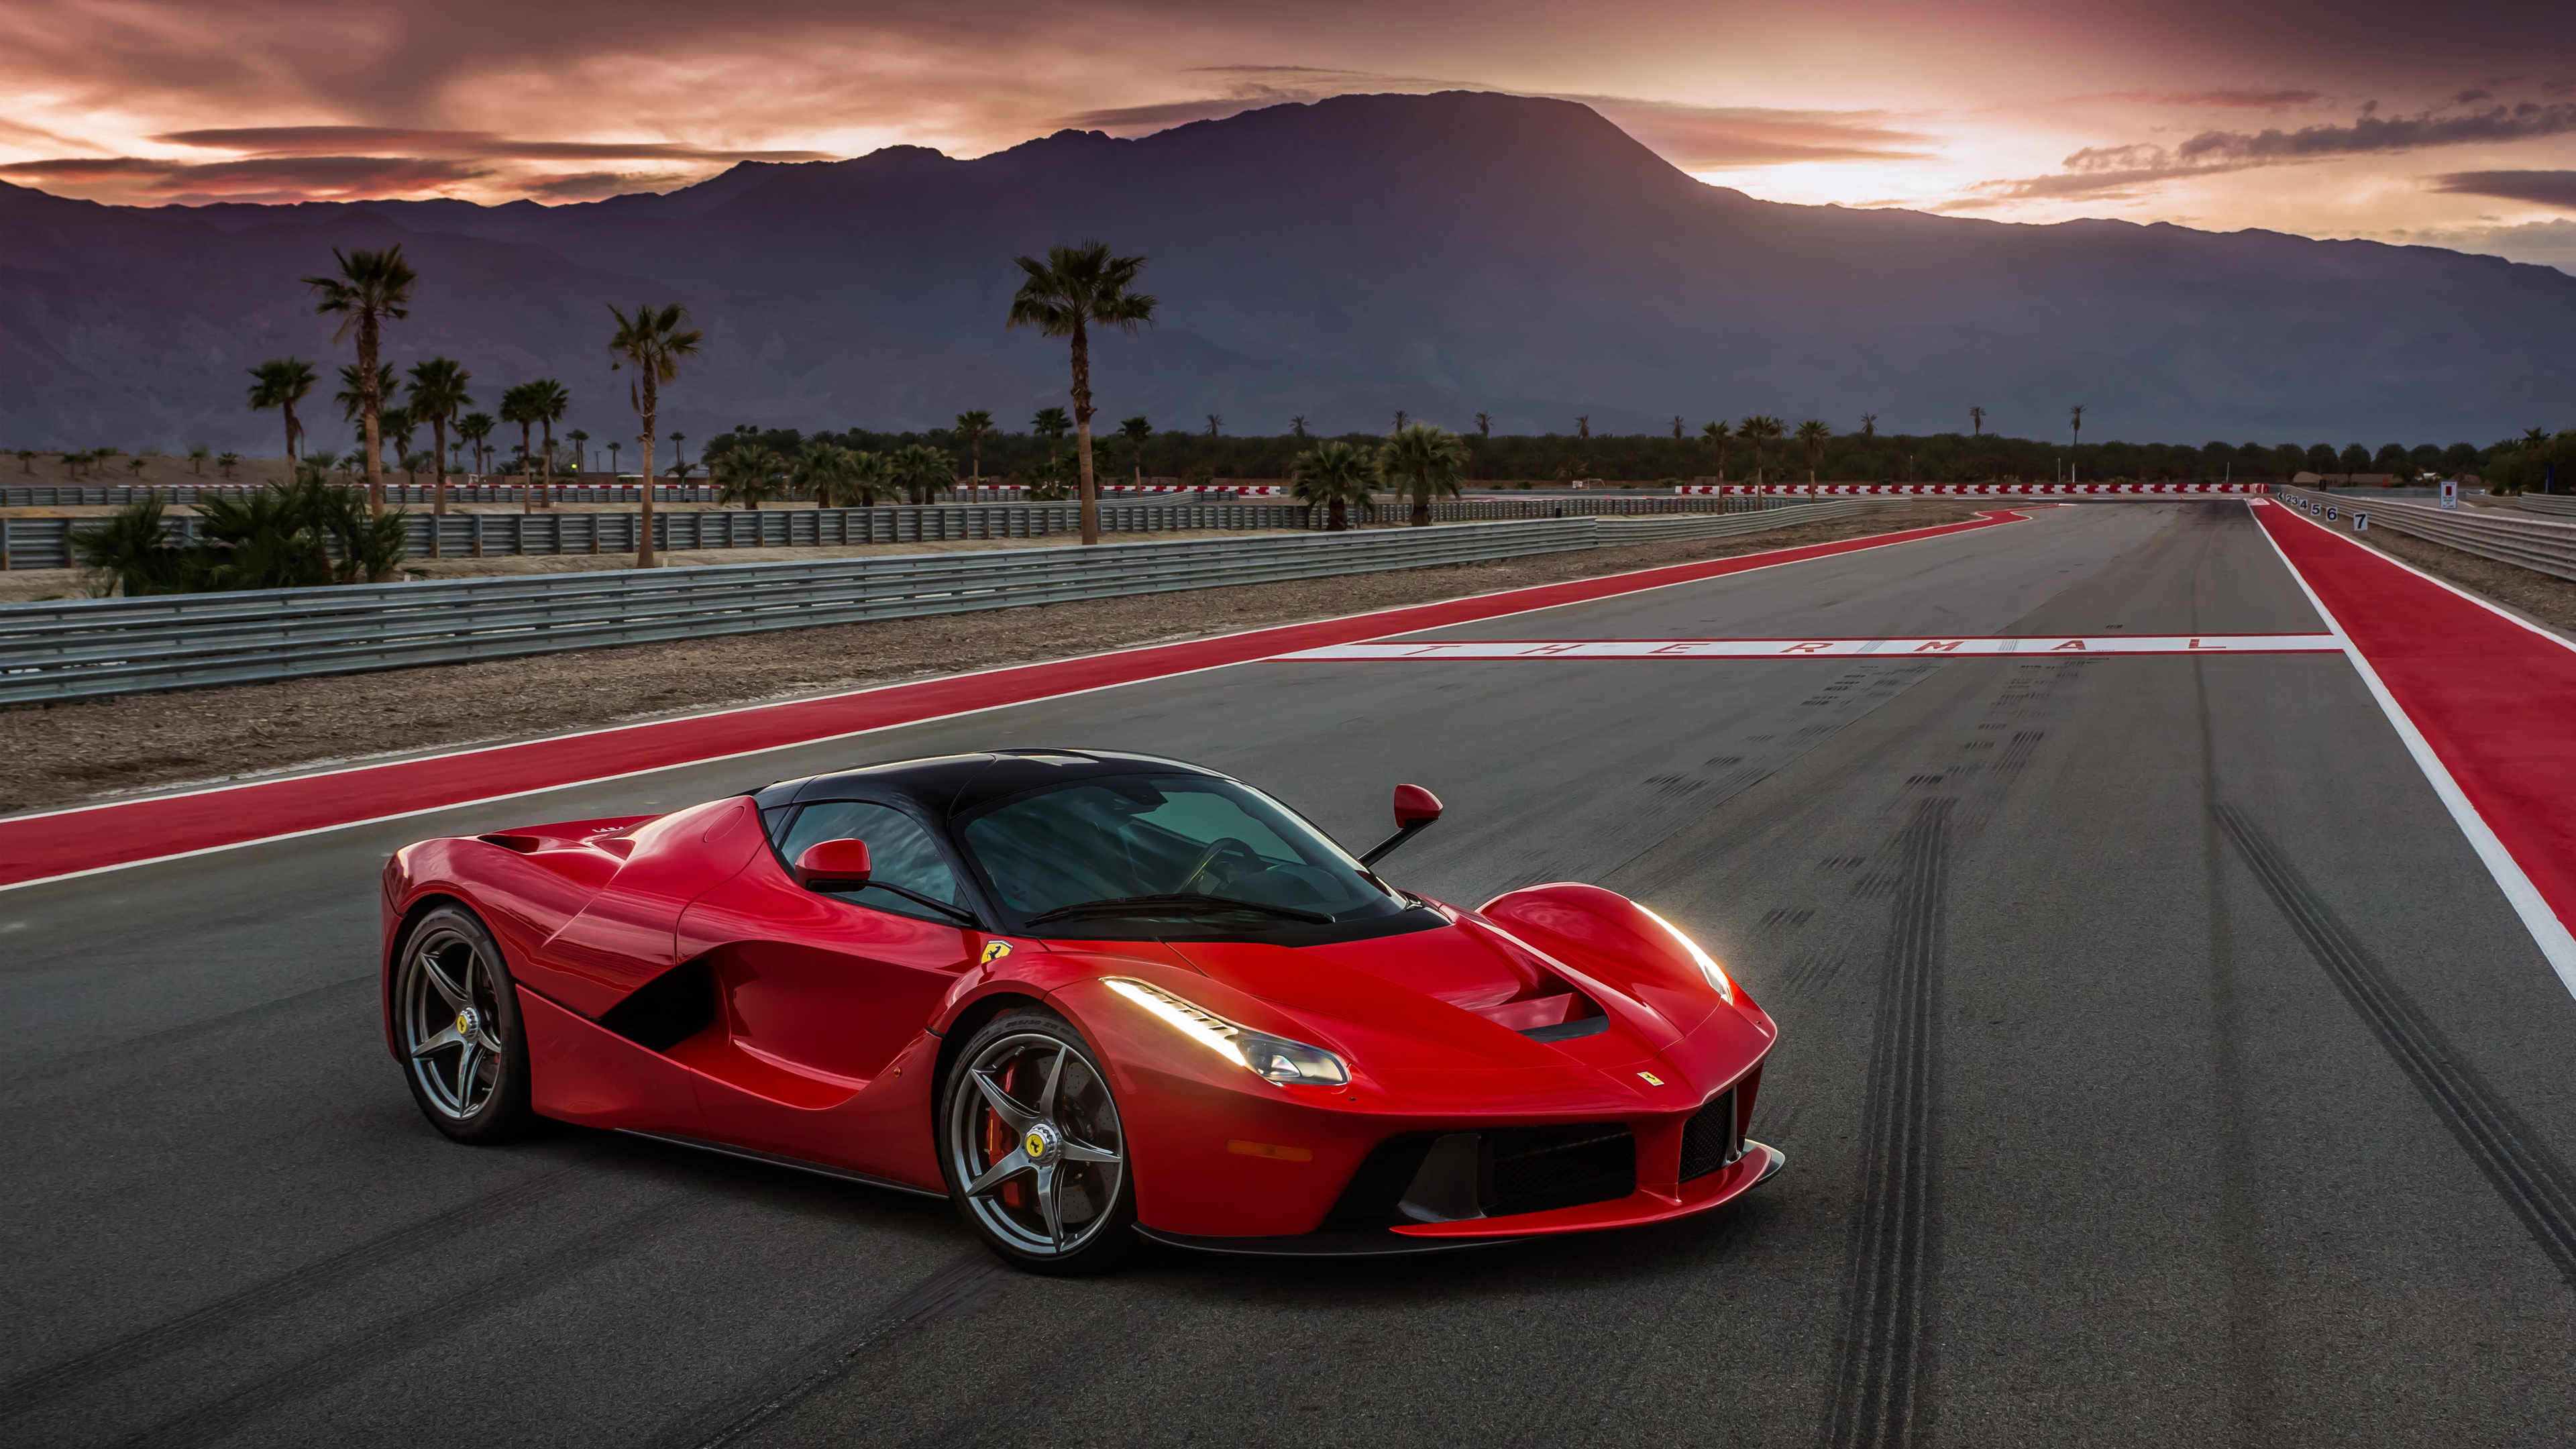 Ferrari LaFerrari 4K Wallpaper | HD Car Wallpapers | ID #6928